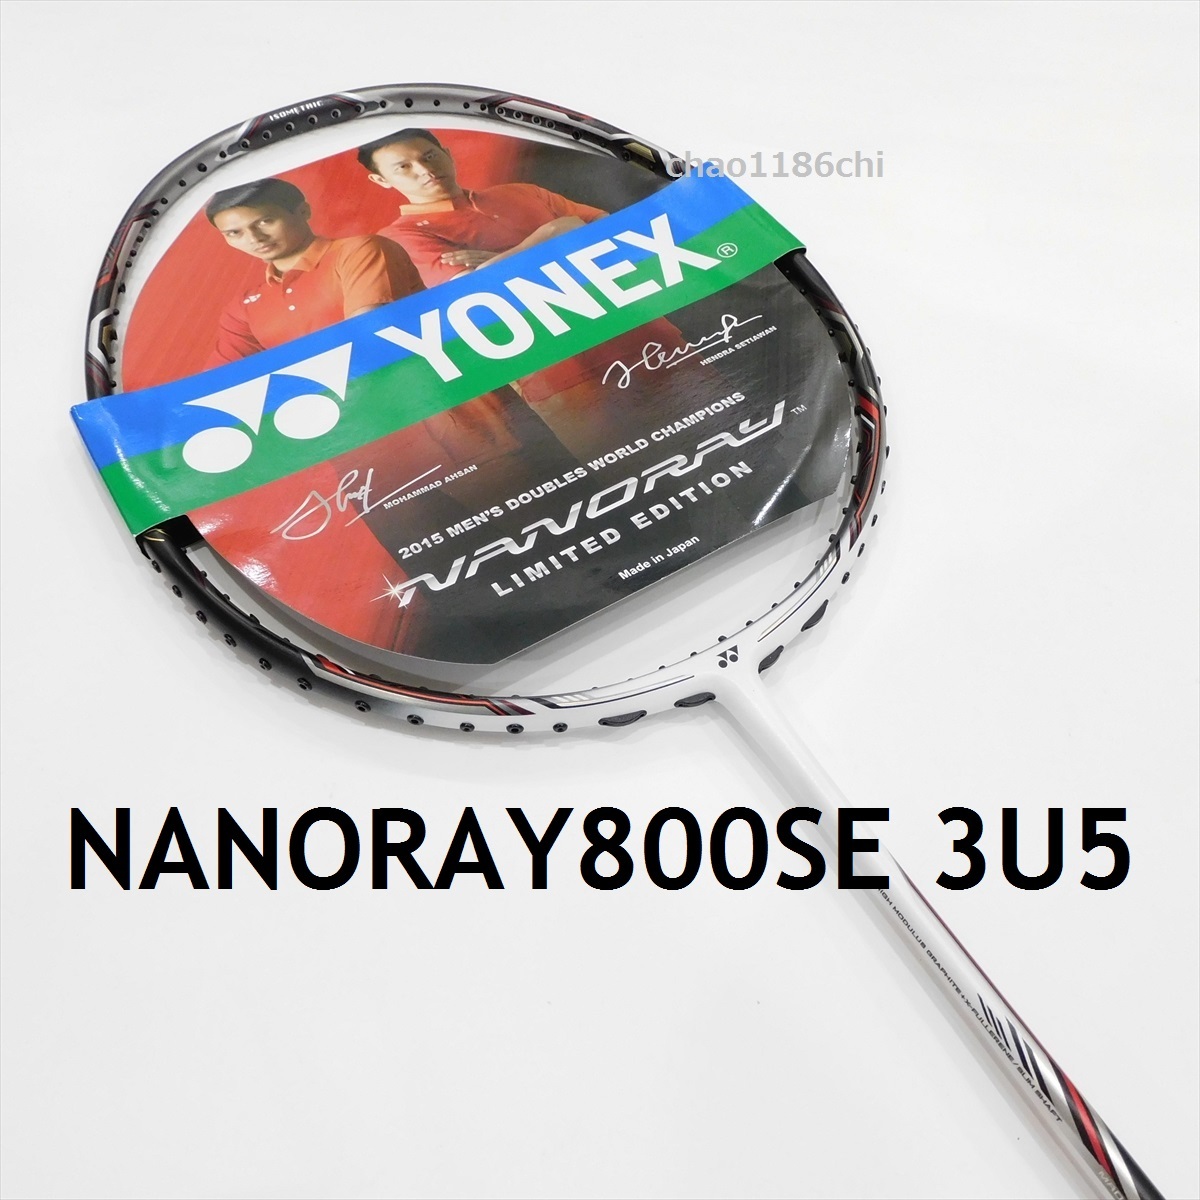 （お得な特別割引価格） 送料込/新品/ヨネックス/限定/3U5/ナノレイ900SE/NANORAY900SE/YONEX/900/ナノレイ900/ナノフレア800/ナノフレア800LT/ナノスピード9900 ラケット